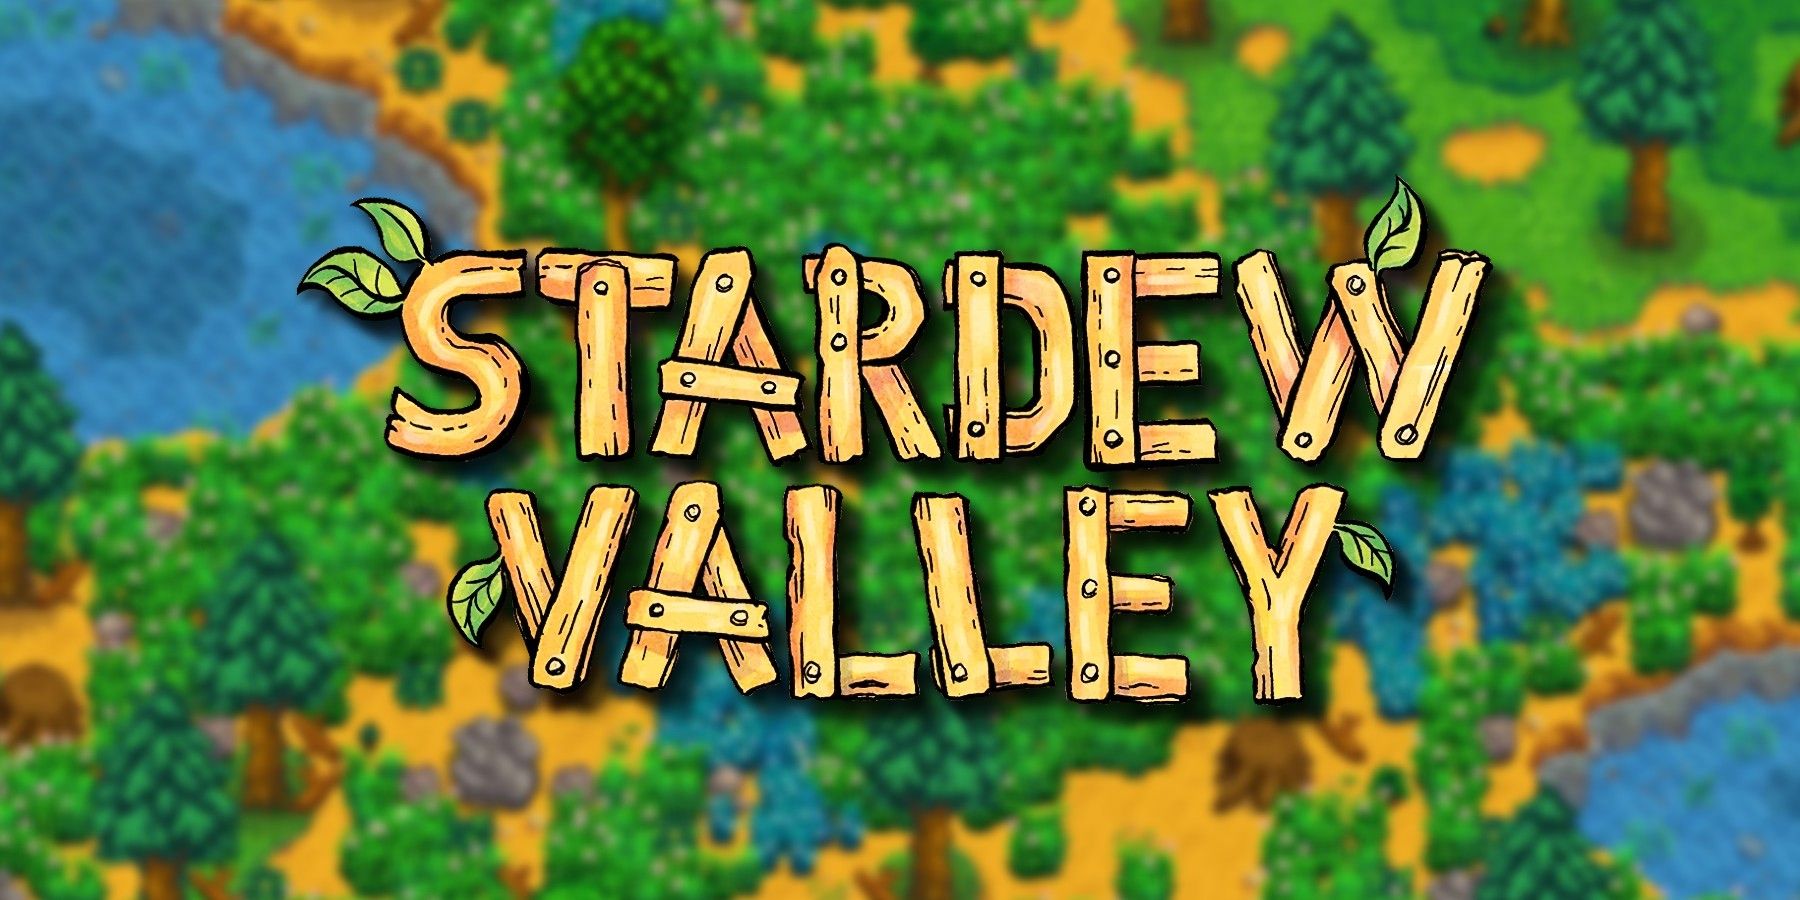 stardew-valley-logo-forest-farm-blurred-background